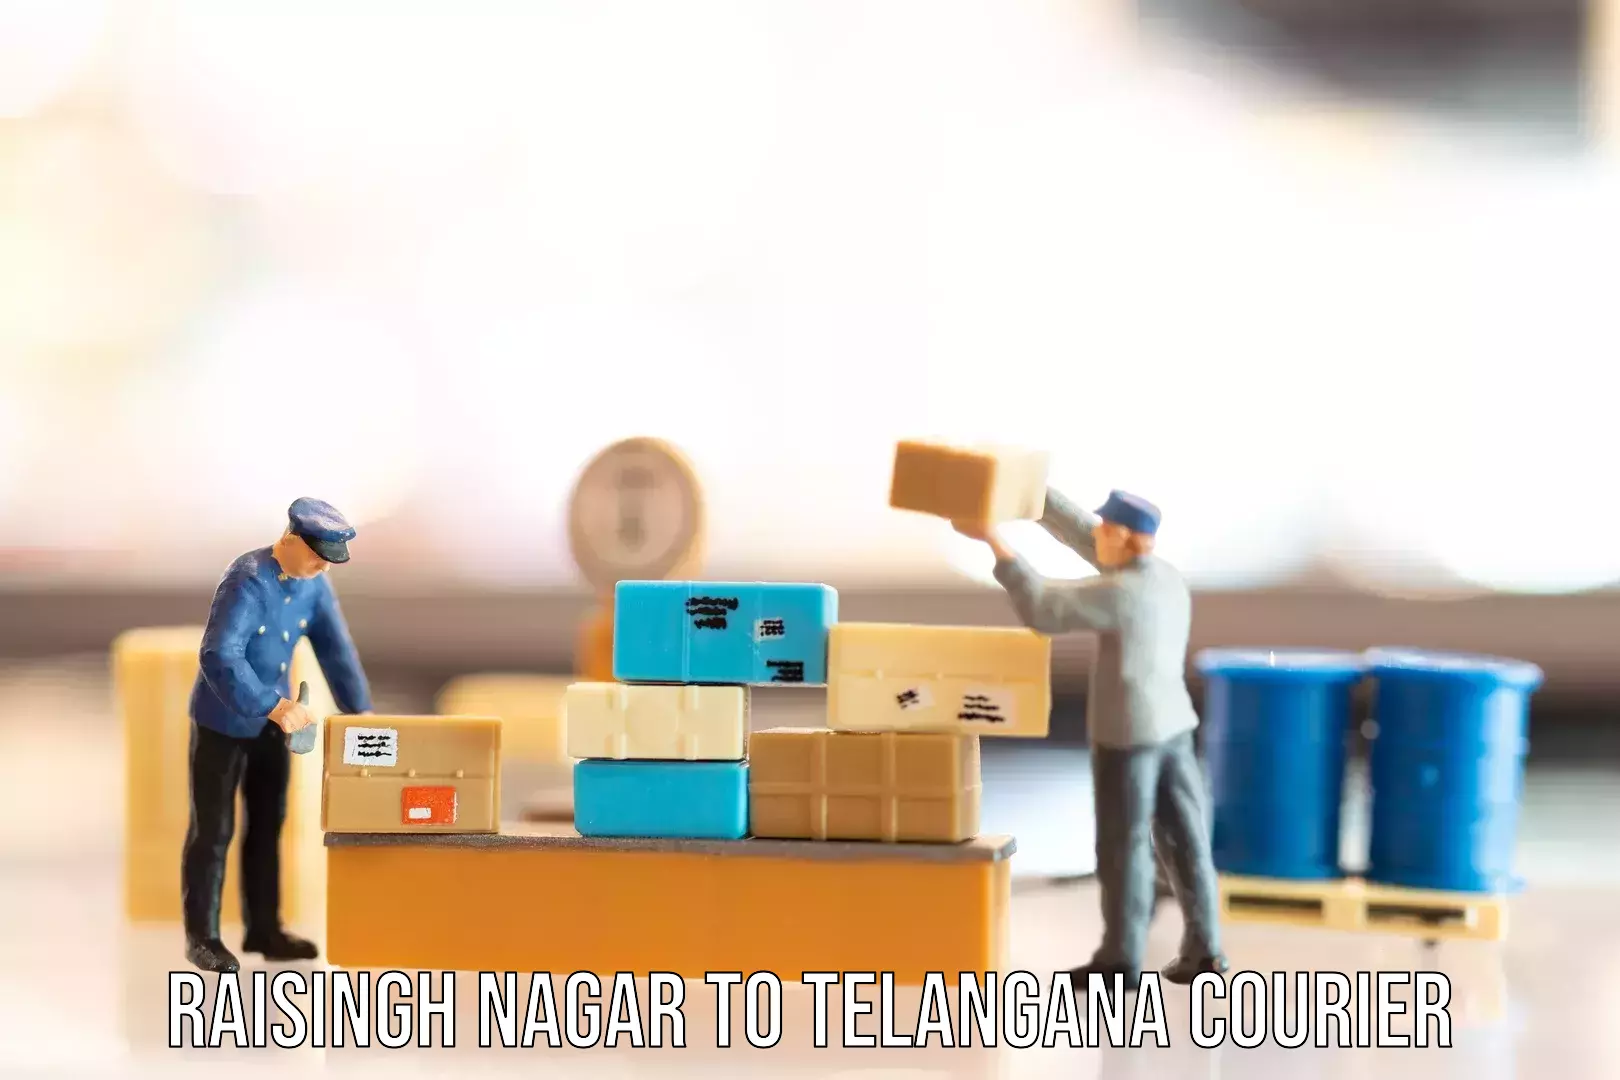 Urgent luggage shipment Raisingh Nagar to Telangana